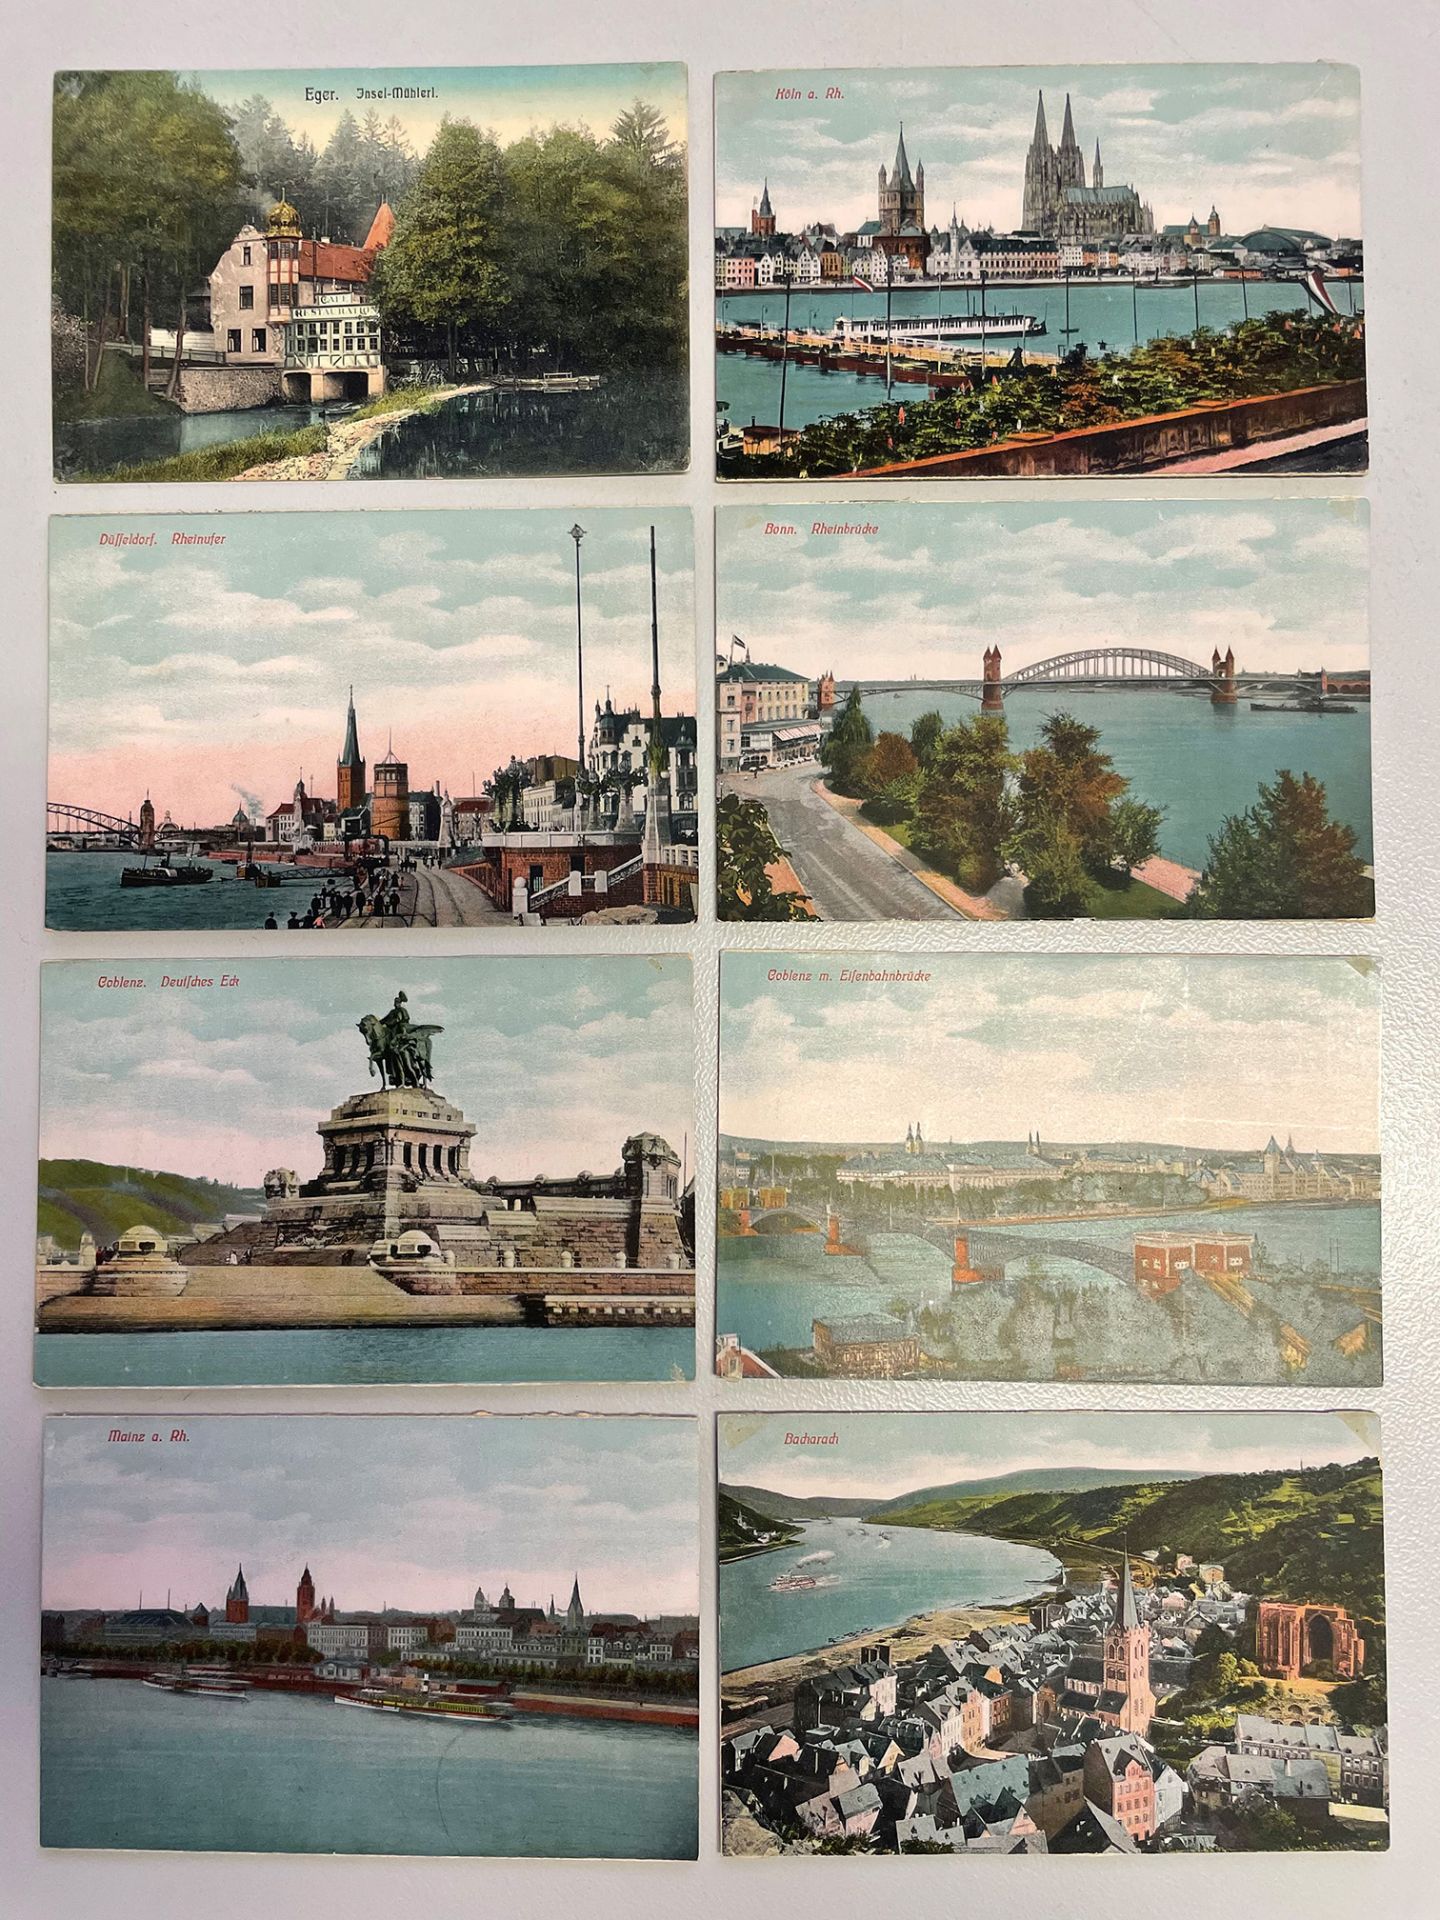 Konvolut Postkarten, unterschiedliche Motive und Zeiten, darunter Eger, Lübeck, Bingen, Caub a. - Image 5 of 7